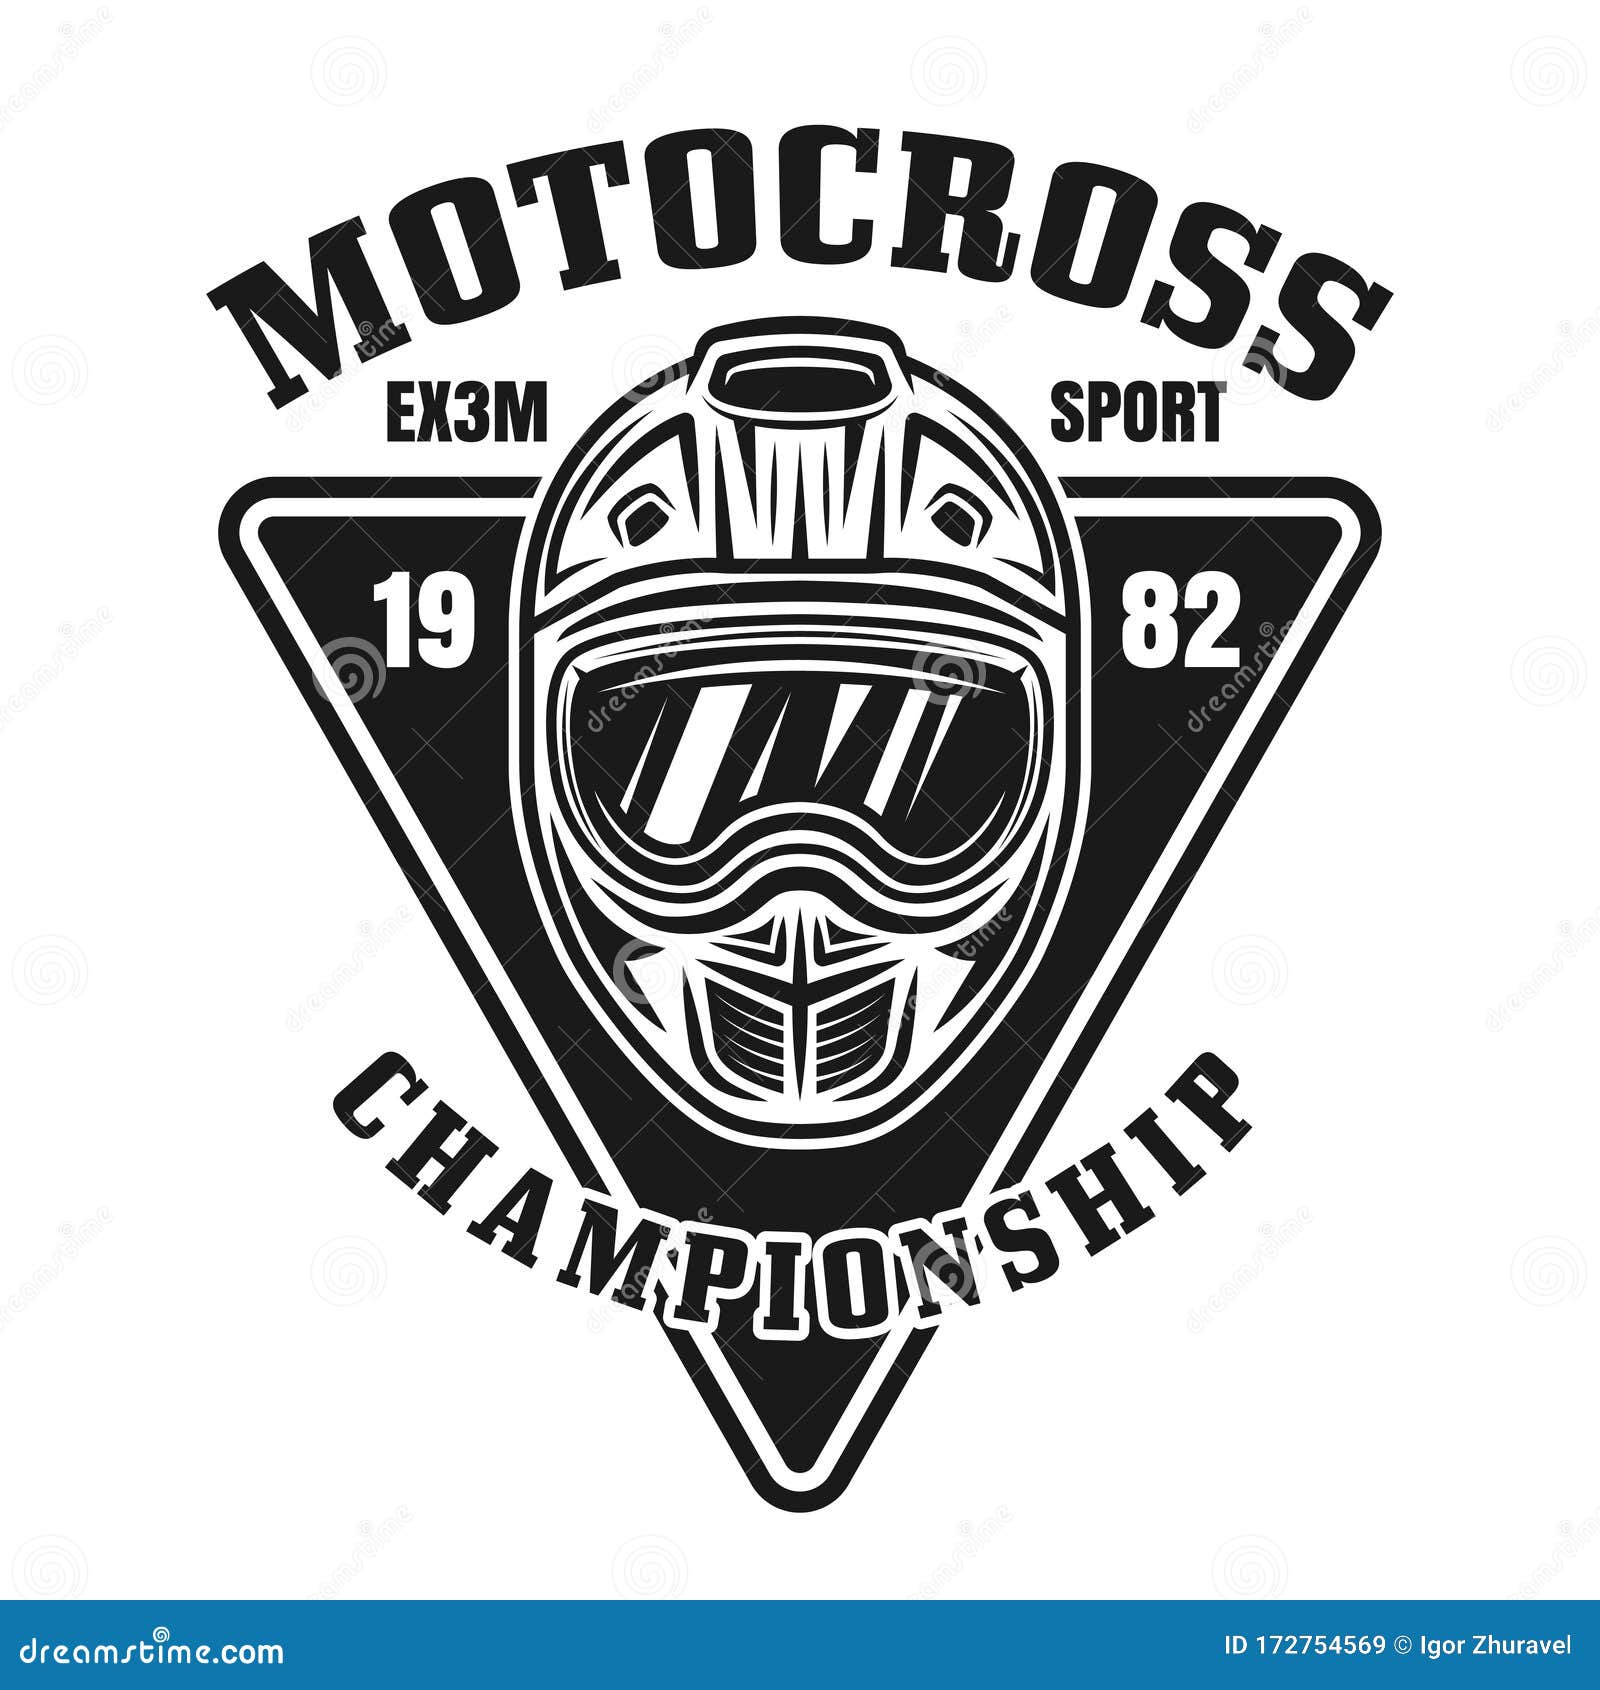 Silhouettes rider participa do campeonato de motocross em fundo branco